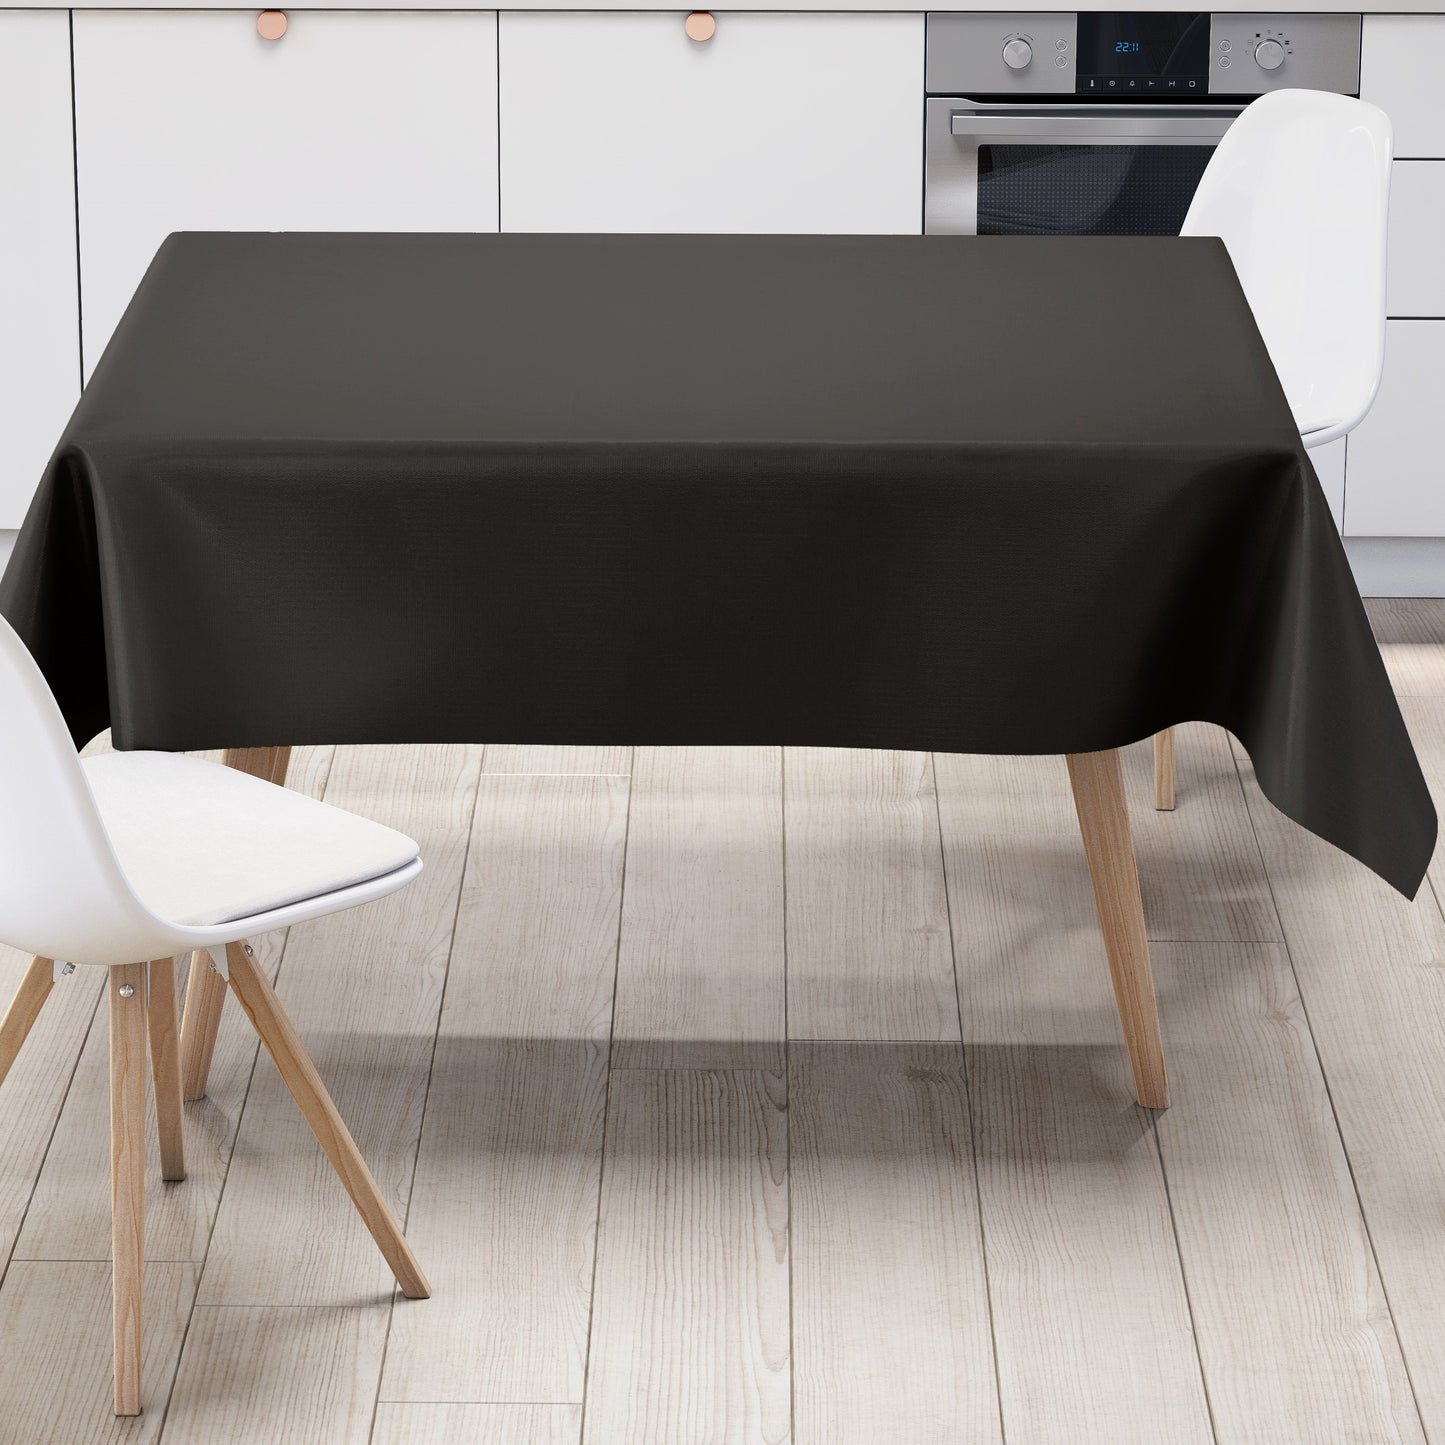 KEVKUS Wachstuch Tischdecke uni 24 Schwarz einfarbig wählbar in eckig, rund und oval -